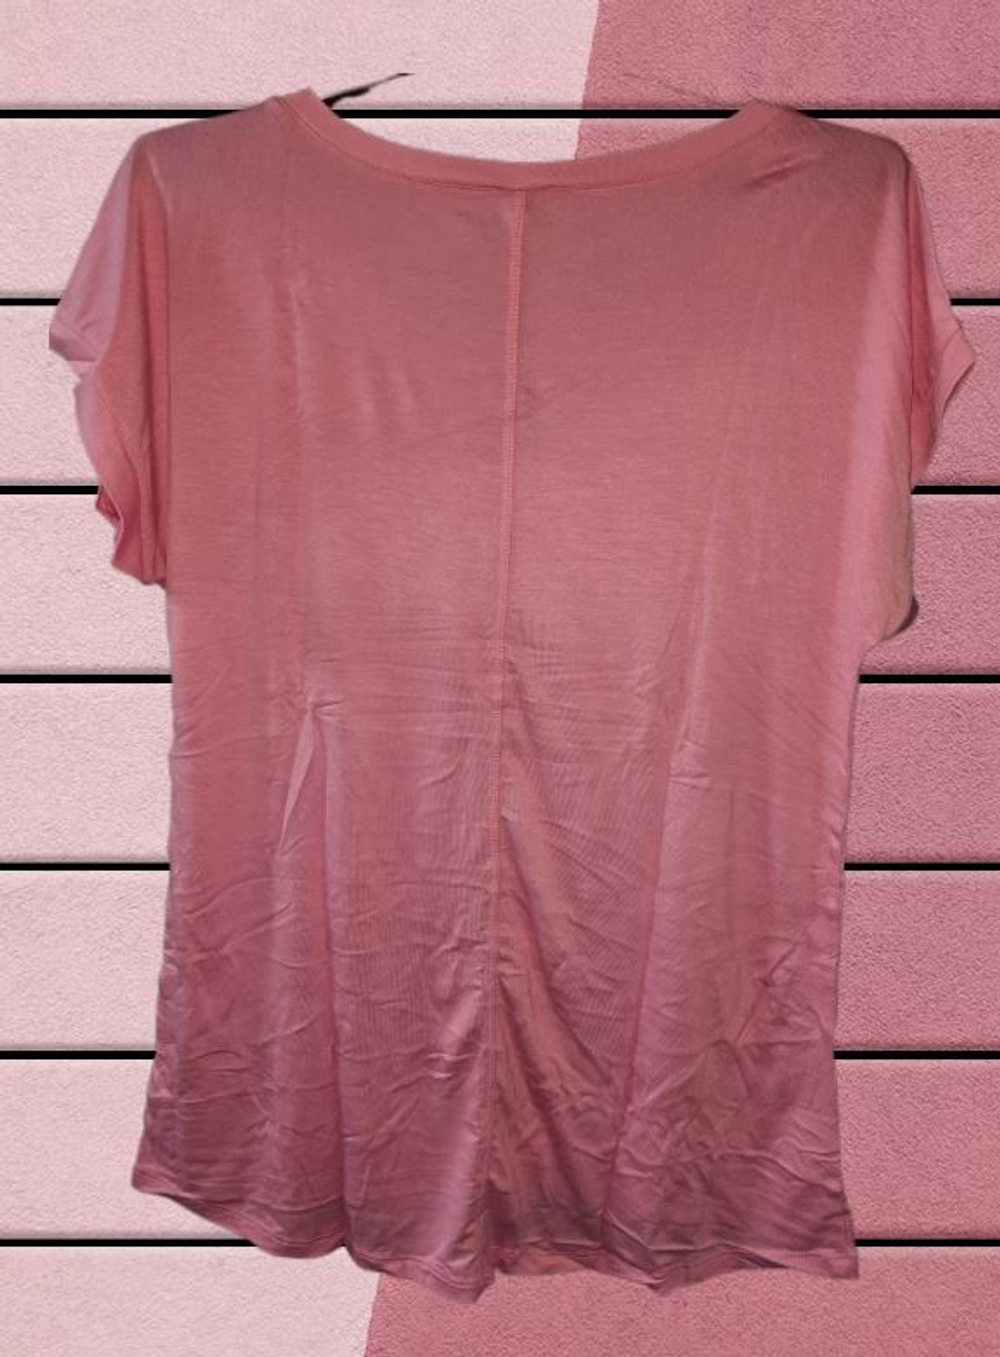 Е 3566/лососево-розовый футболка женская Trikozza.